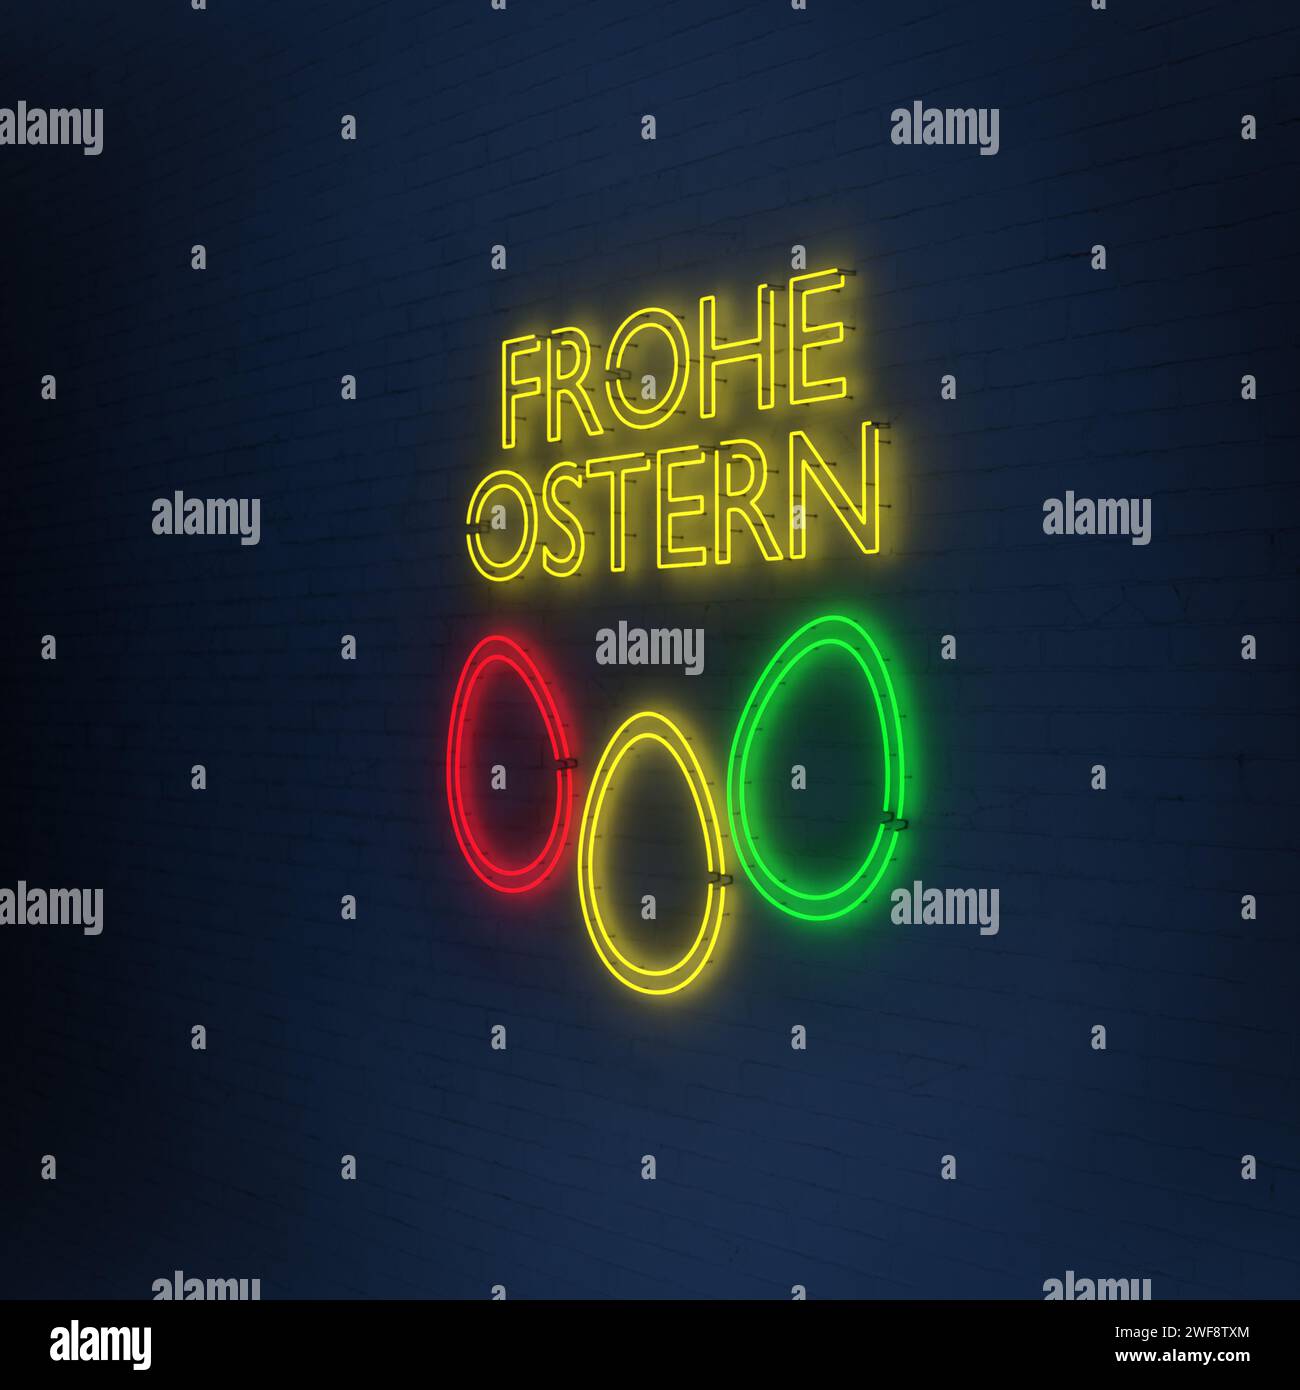 Texte allemand 'Frohe Ostern' (Joyeuses Pâques) signe néon avec oeuf de différentes couleurs contre un mur de briques blanches éclairé en bleu Banque D'Images